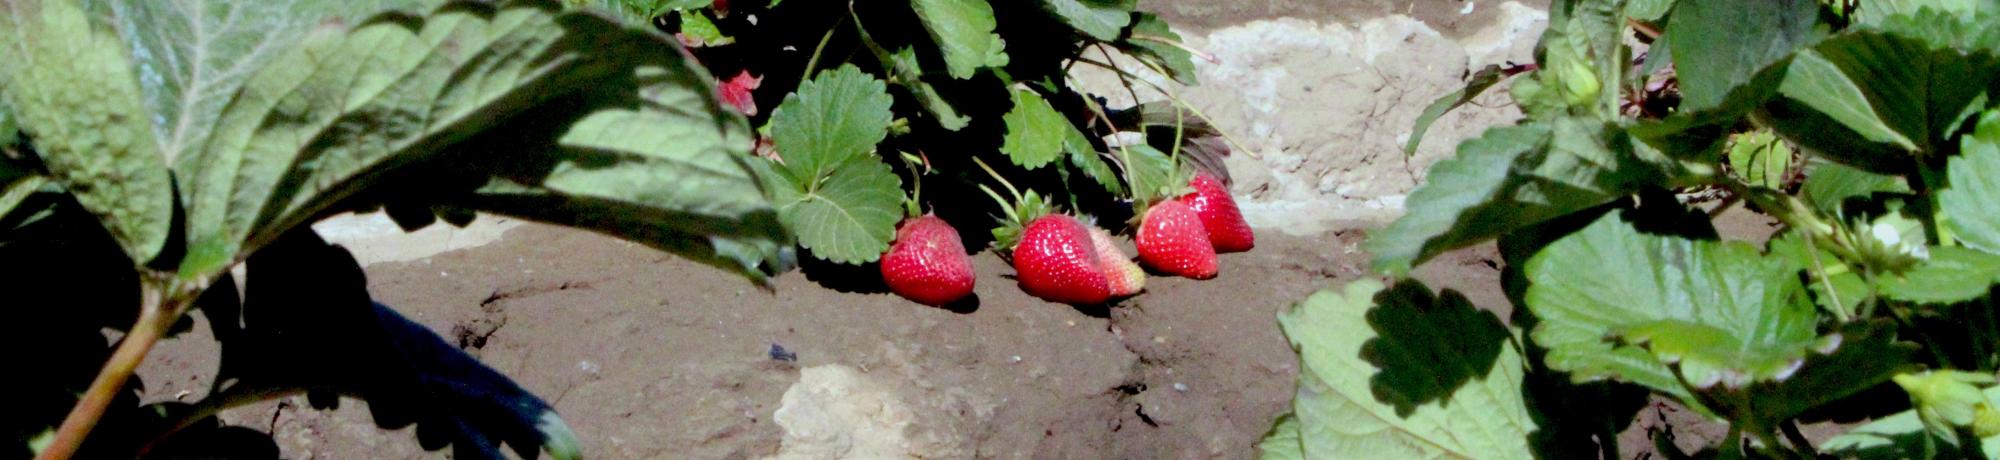 Strawberries in field